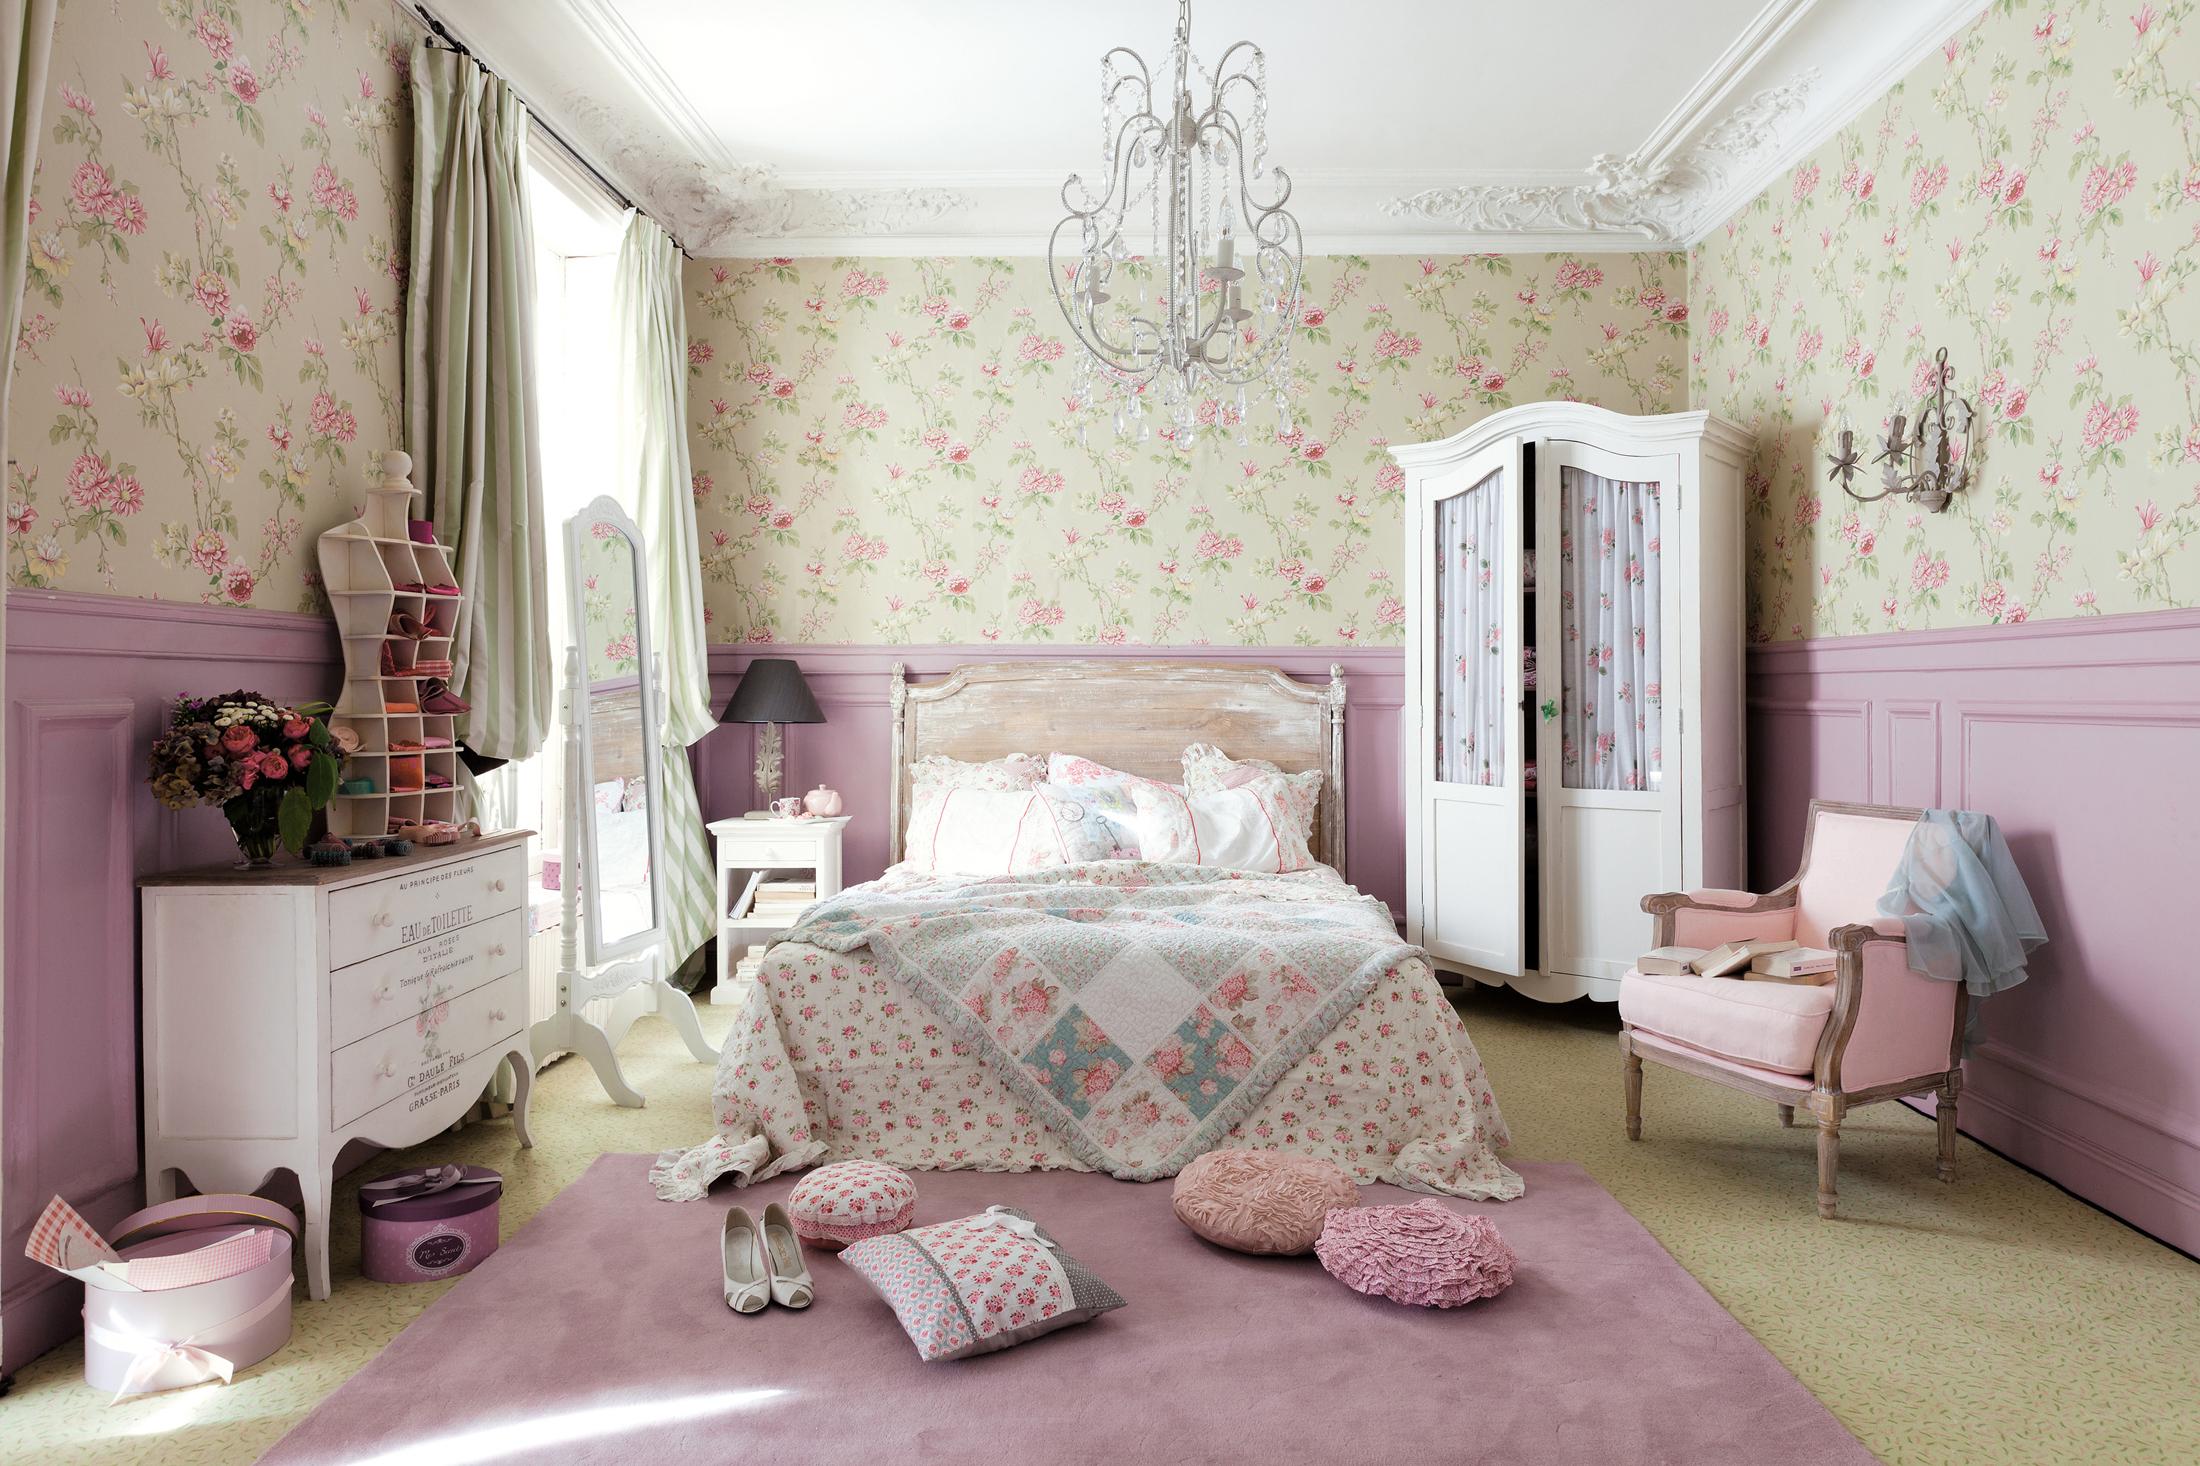 Blumenmuster im rosafarbenen Schlafzimmer #kronleuchter #wandgestaltung #rosawandfarbe ©Maisons du Monde